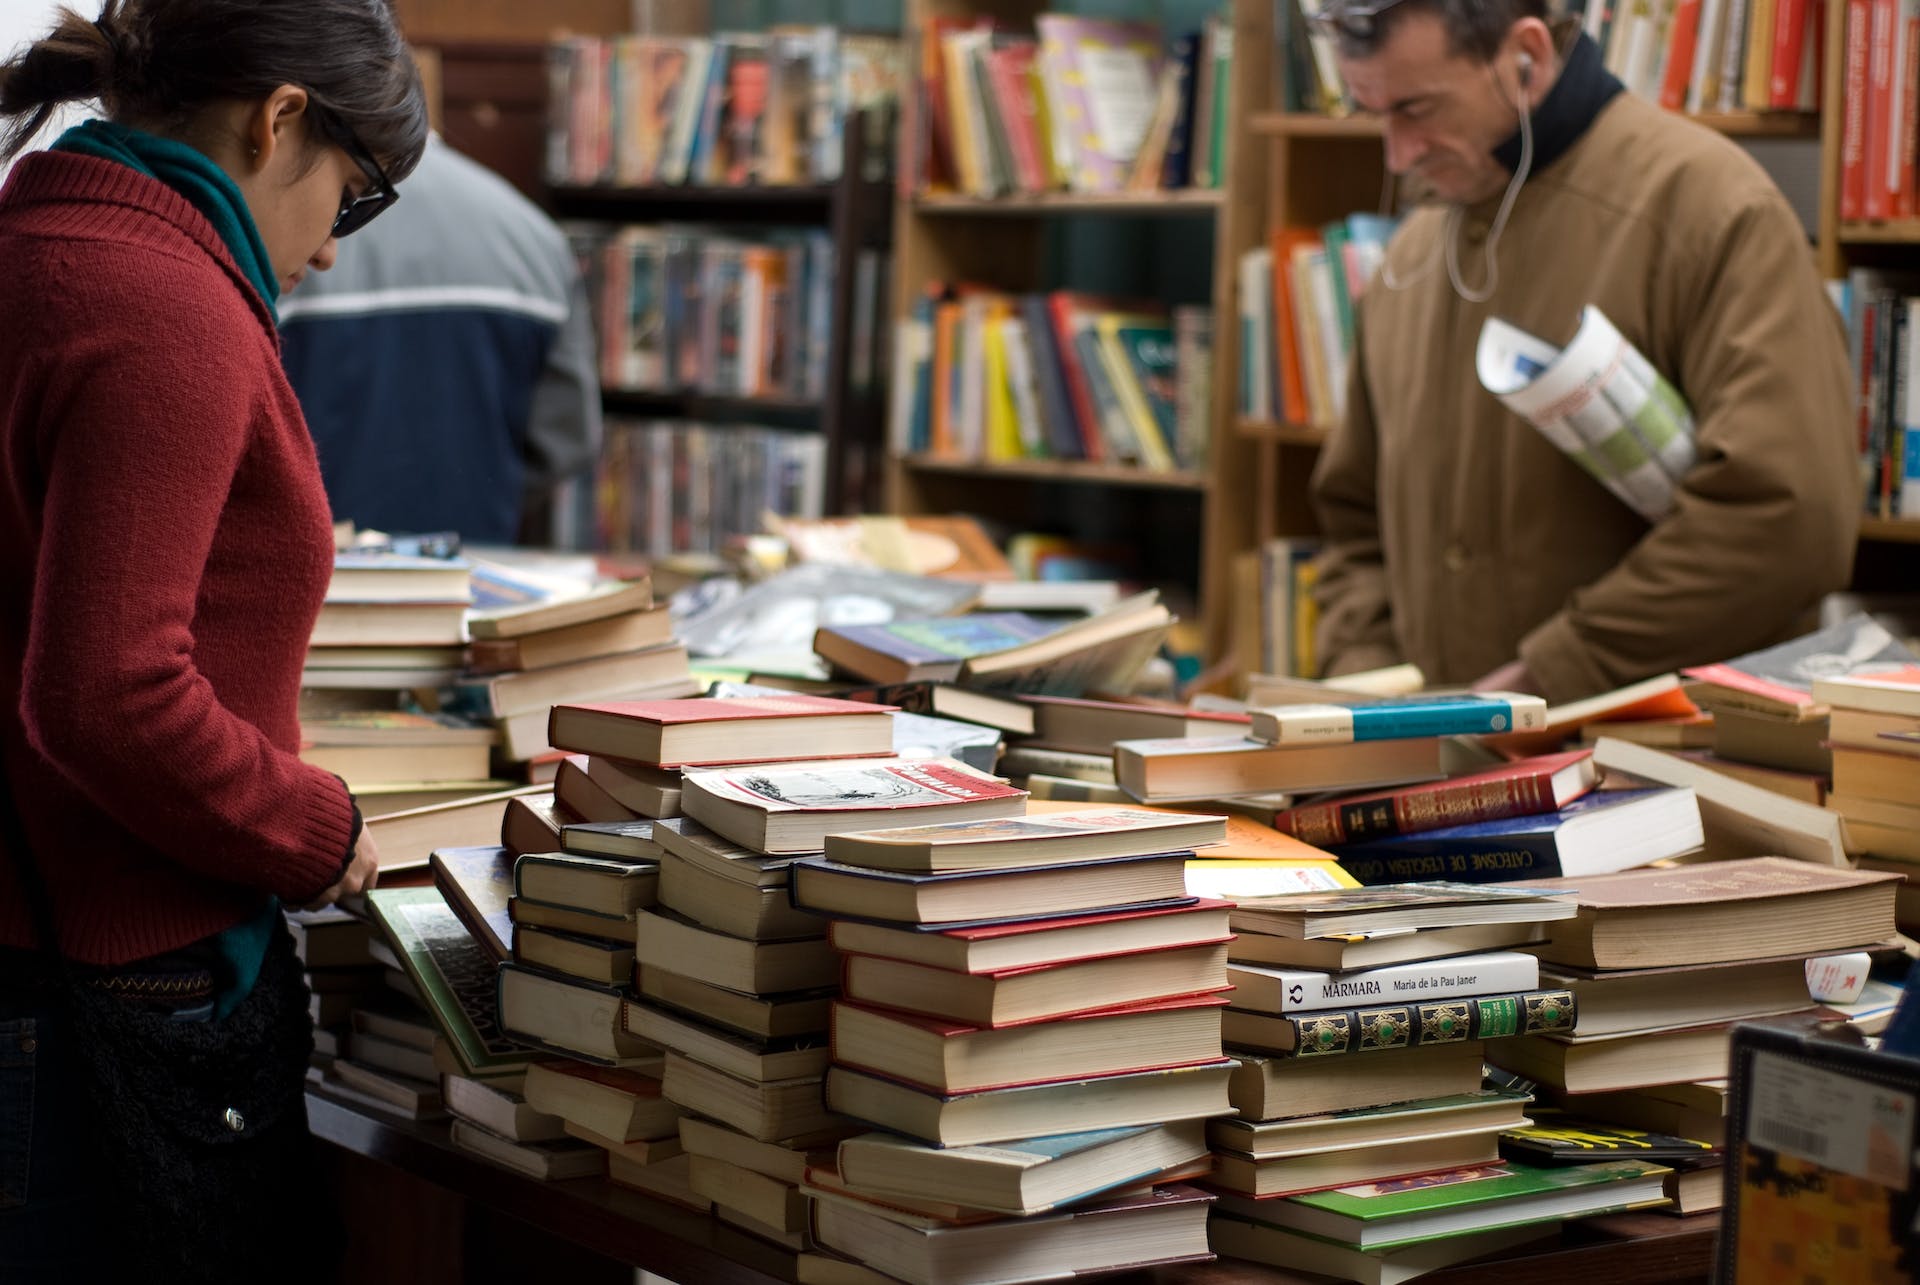 Des gens dans une librairie | Source : Pexels